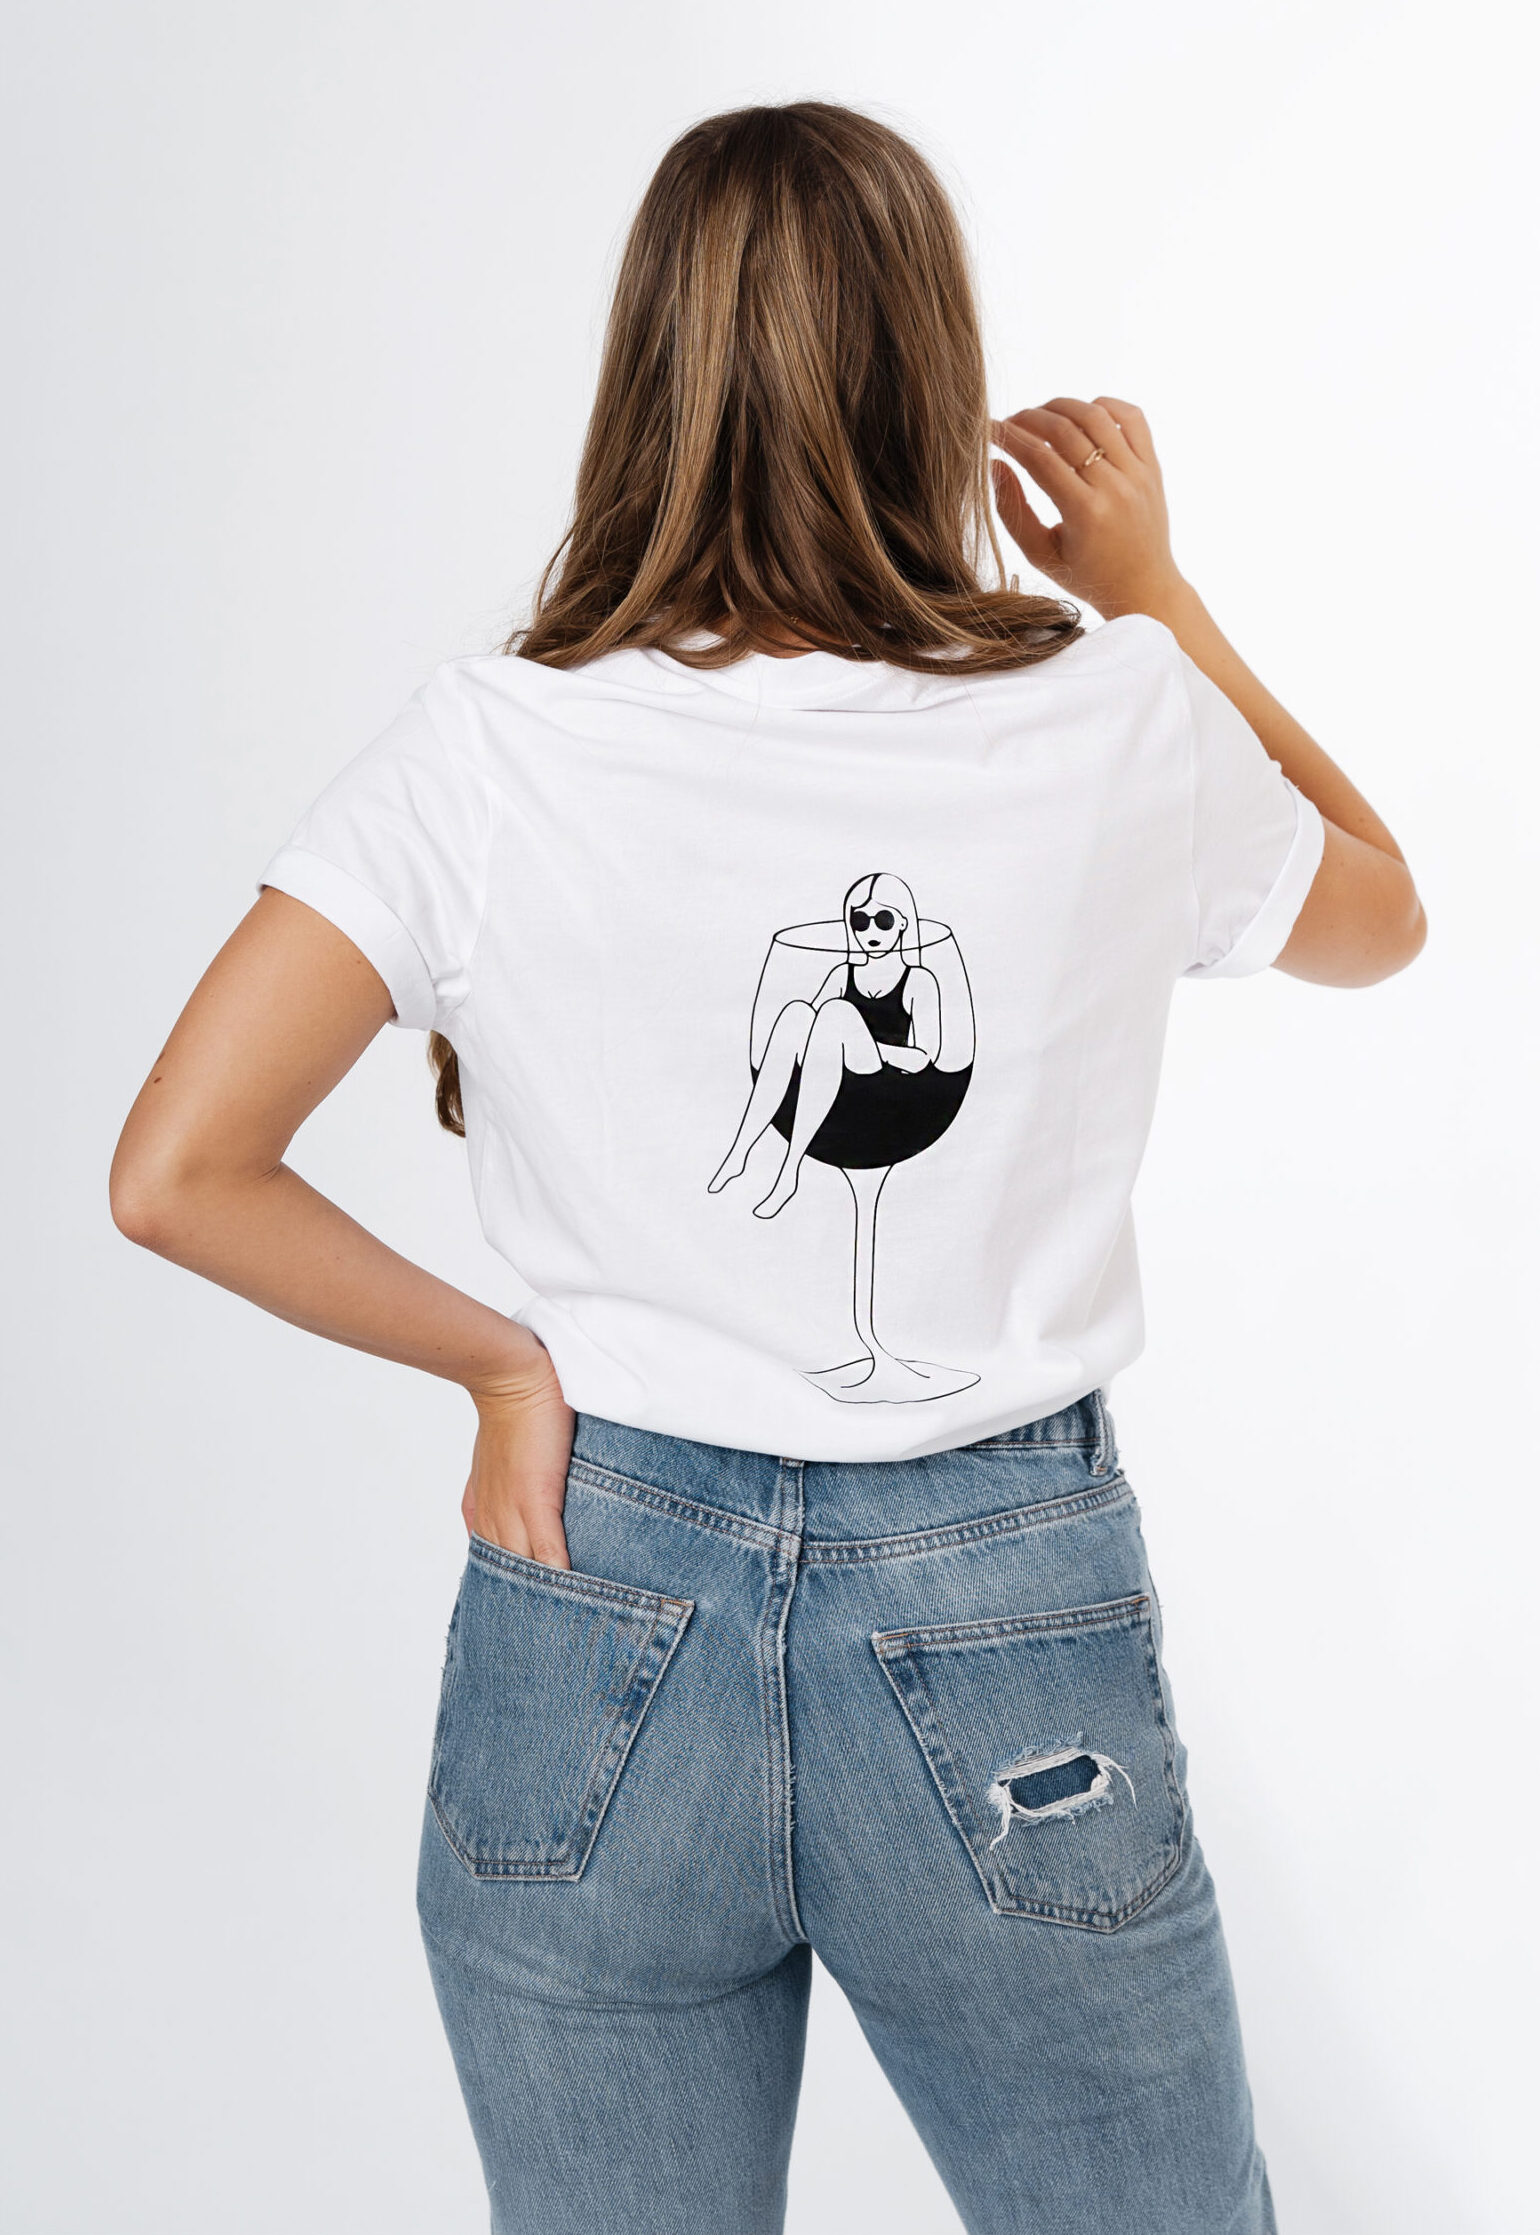 T-shirt "Mood: need wine" - Black Giraffe Brand